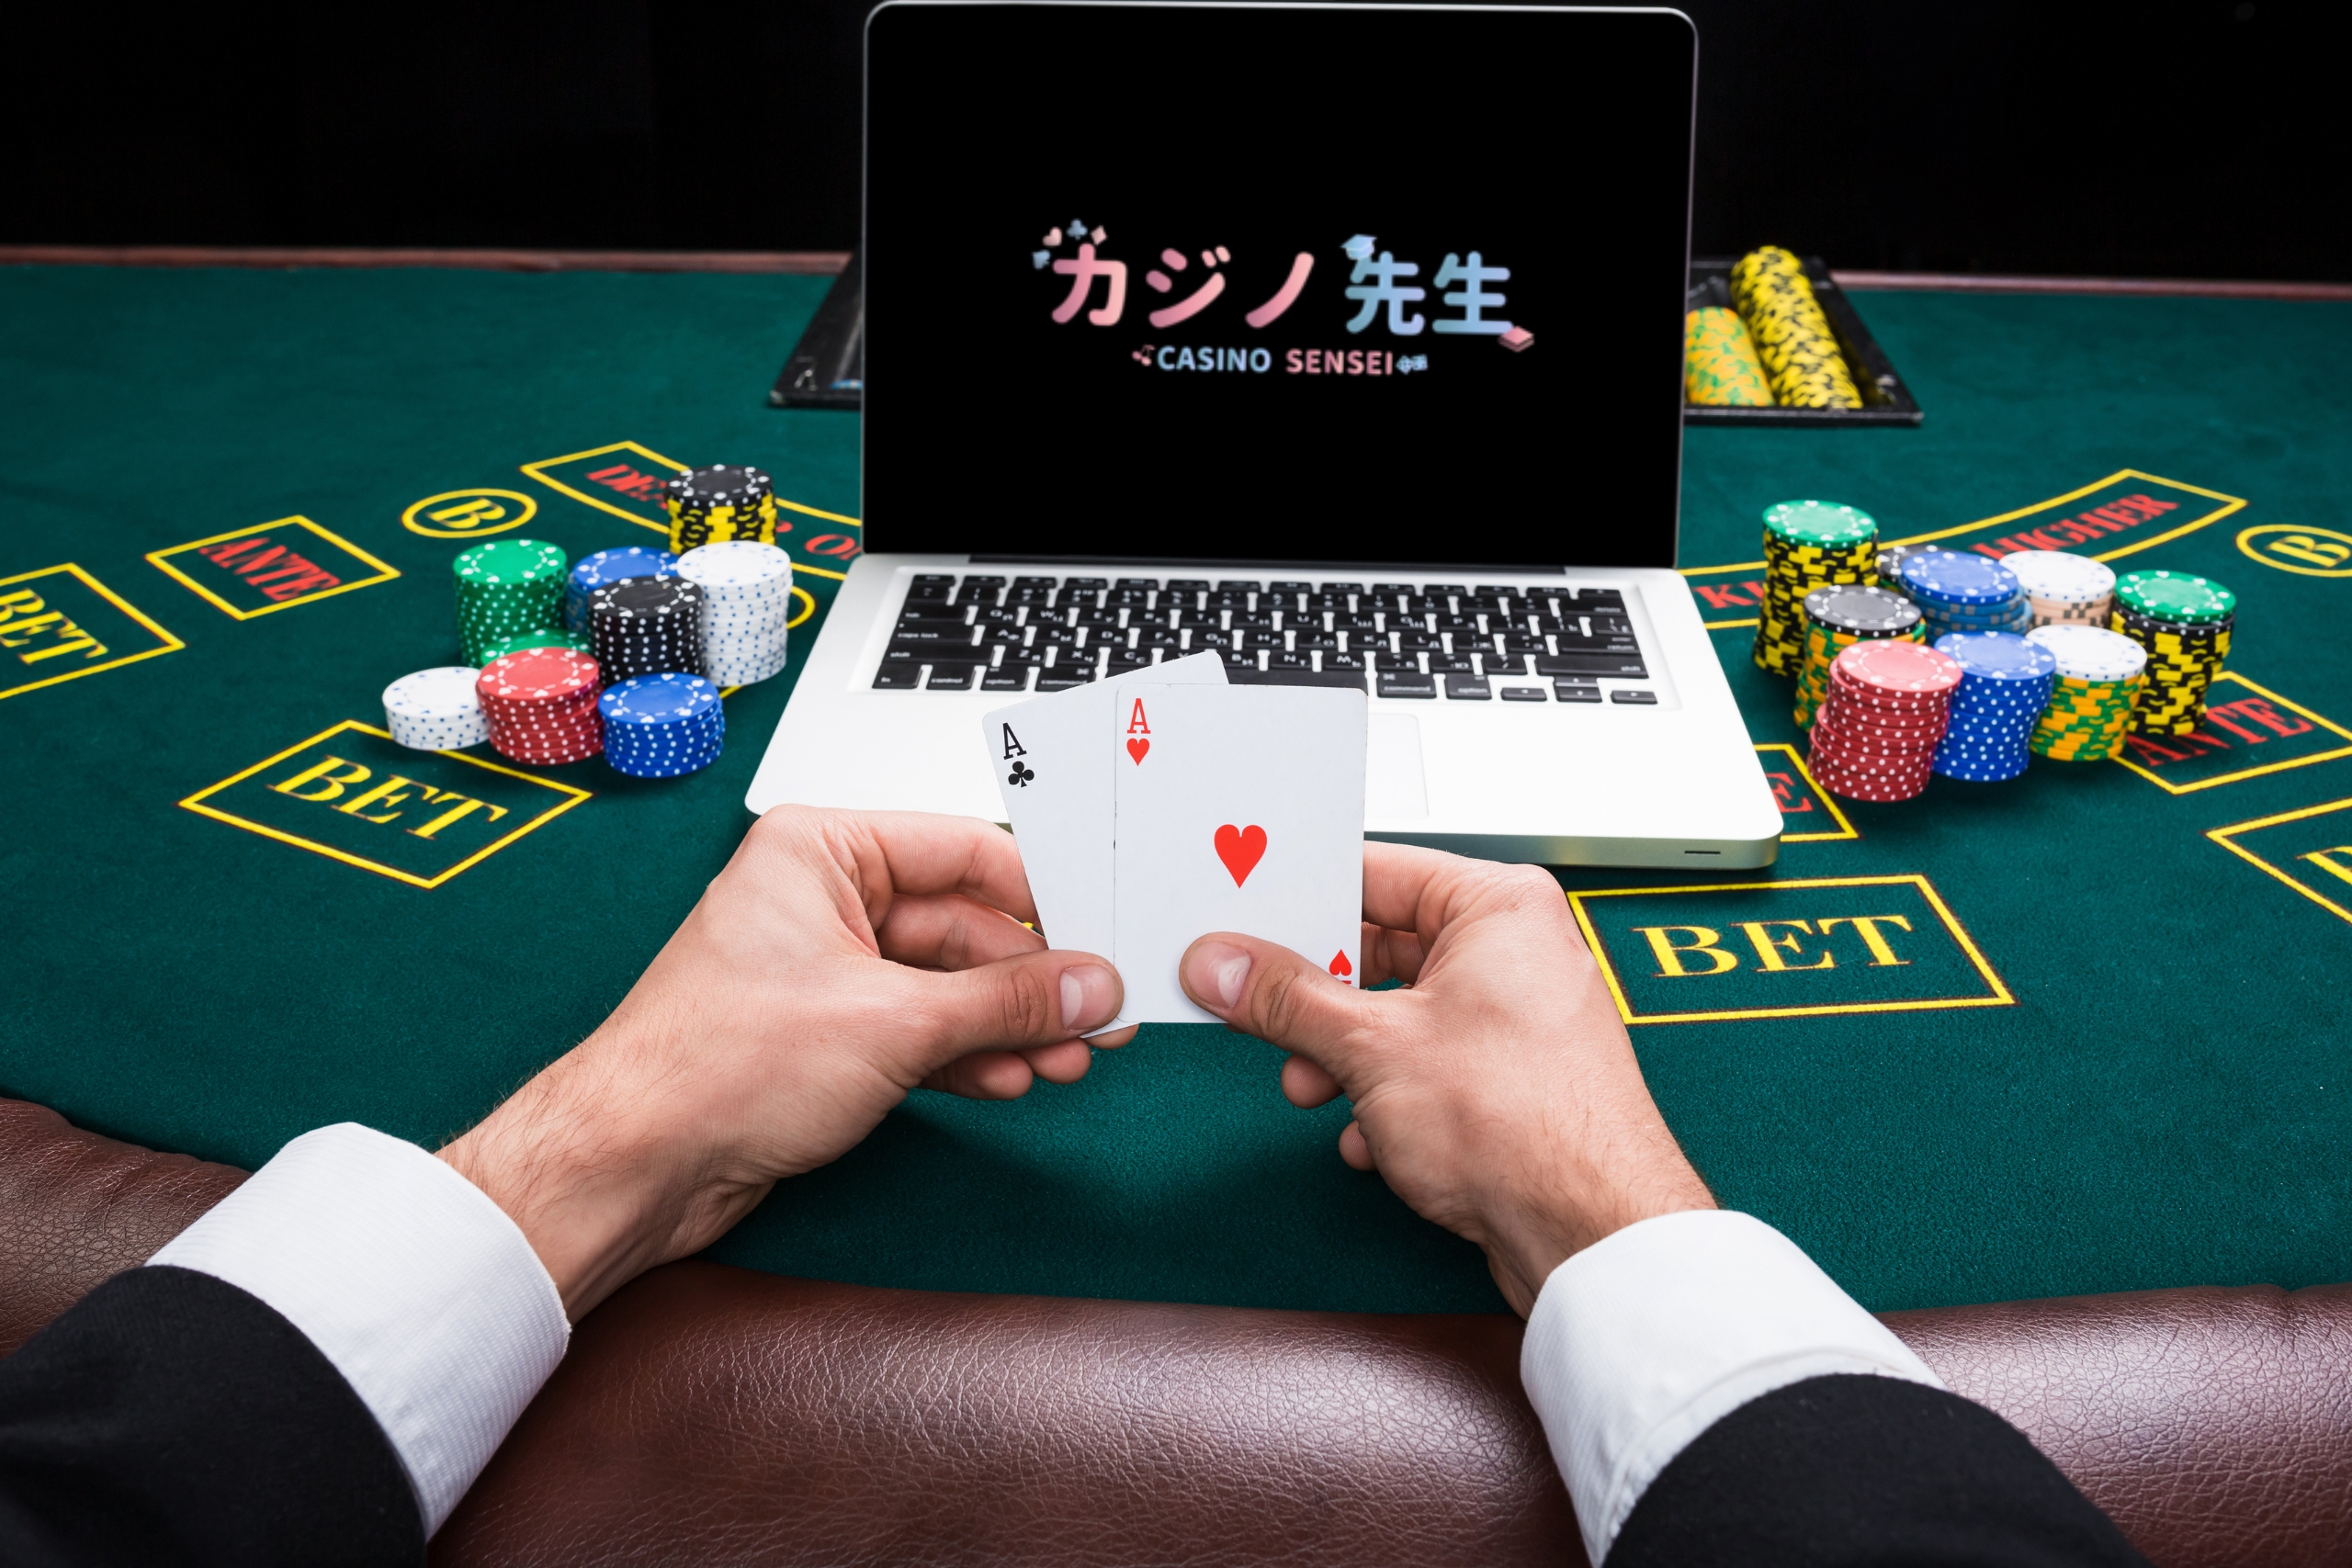 Play Blackjack and Win At Miracle Casino